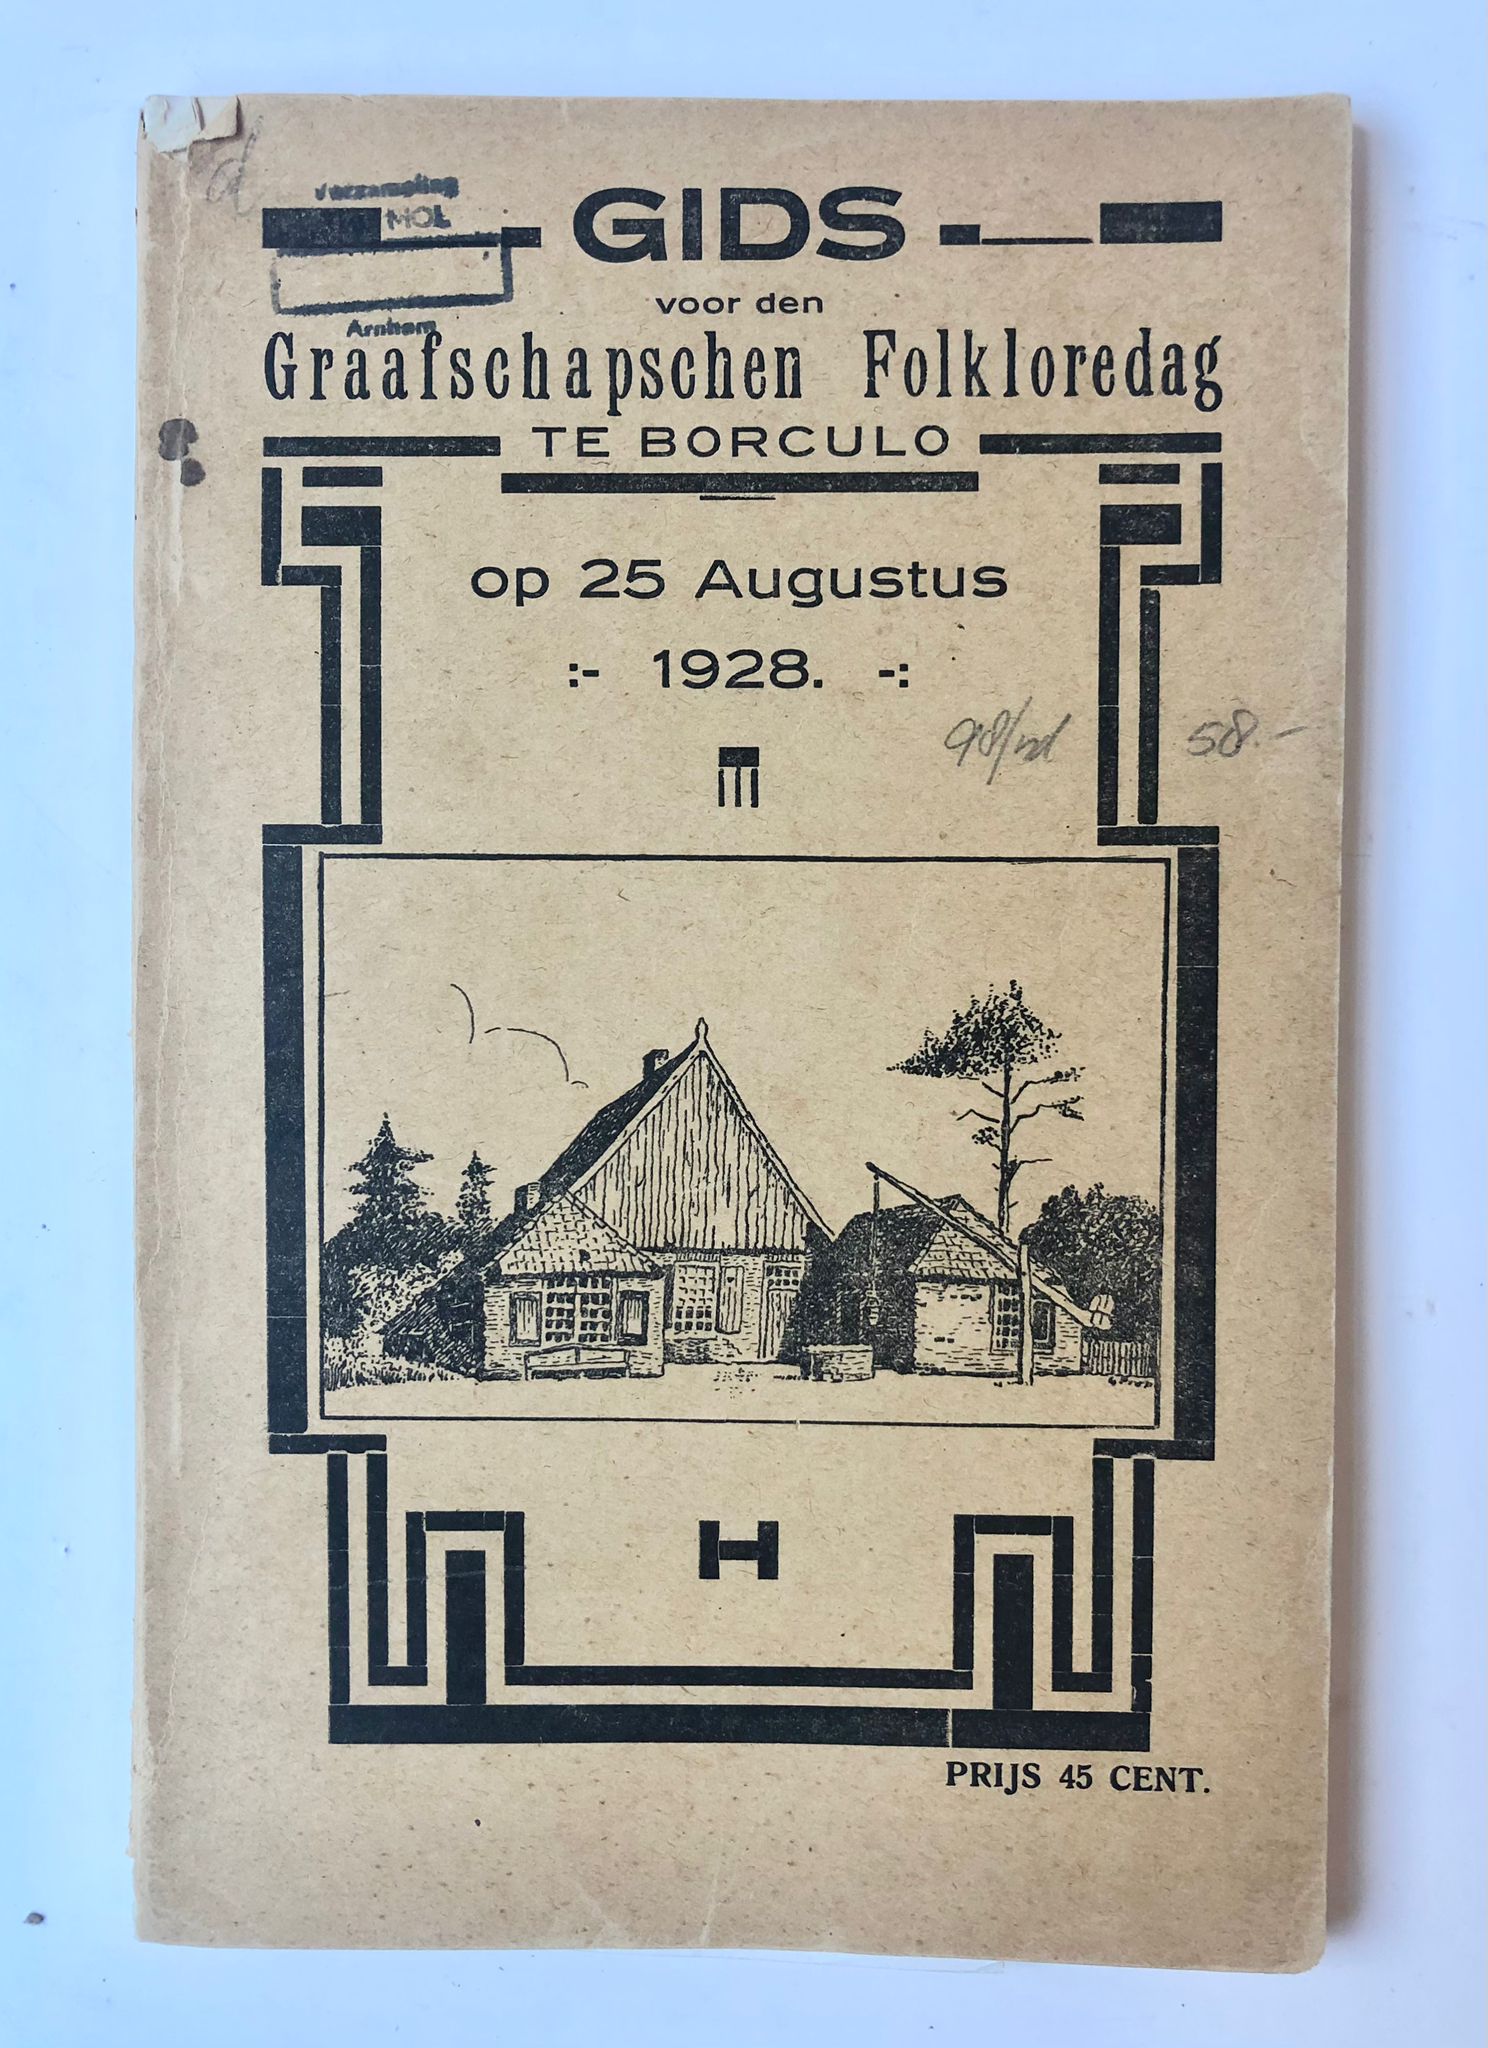 [Folklore 1928] Gids voor den Graafschapschen Folklore dag te Borculo 1928, 96 pag., gedrukt, geillustreerd.